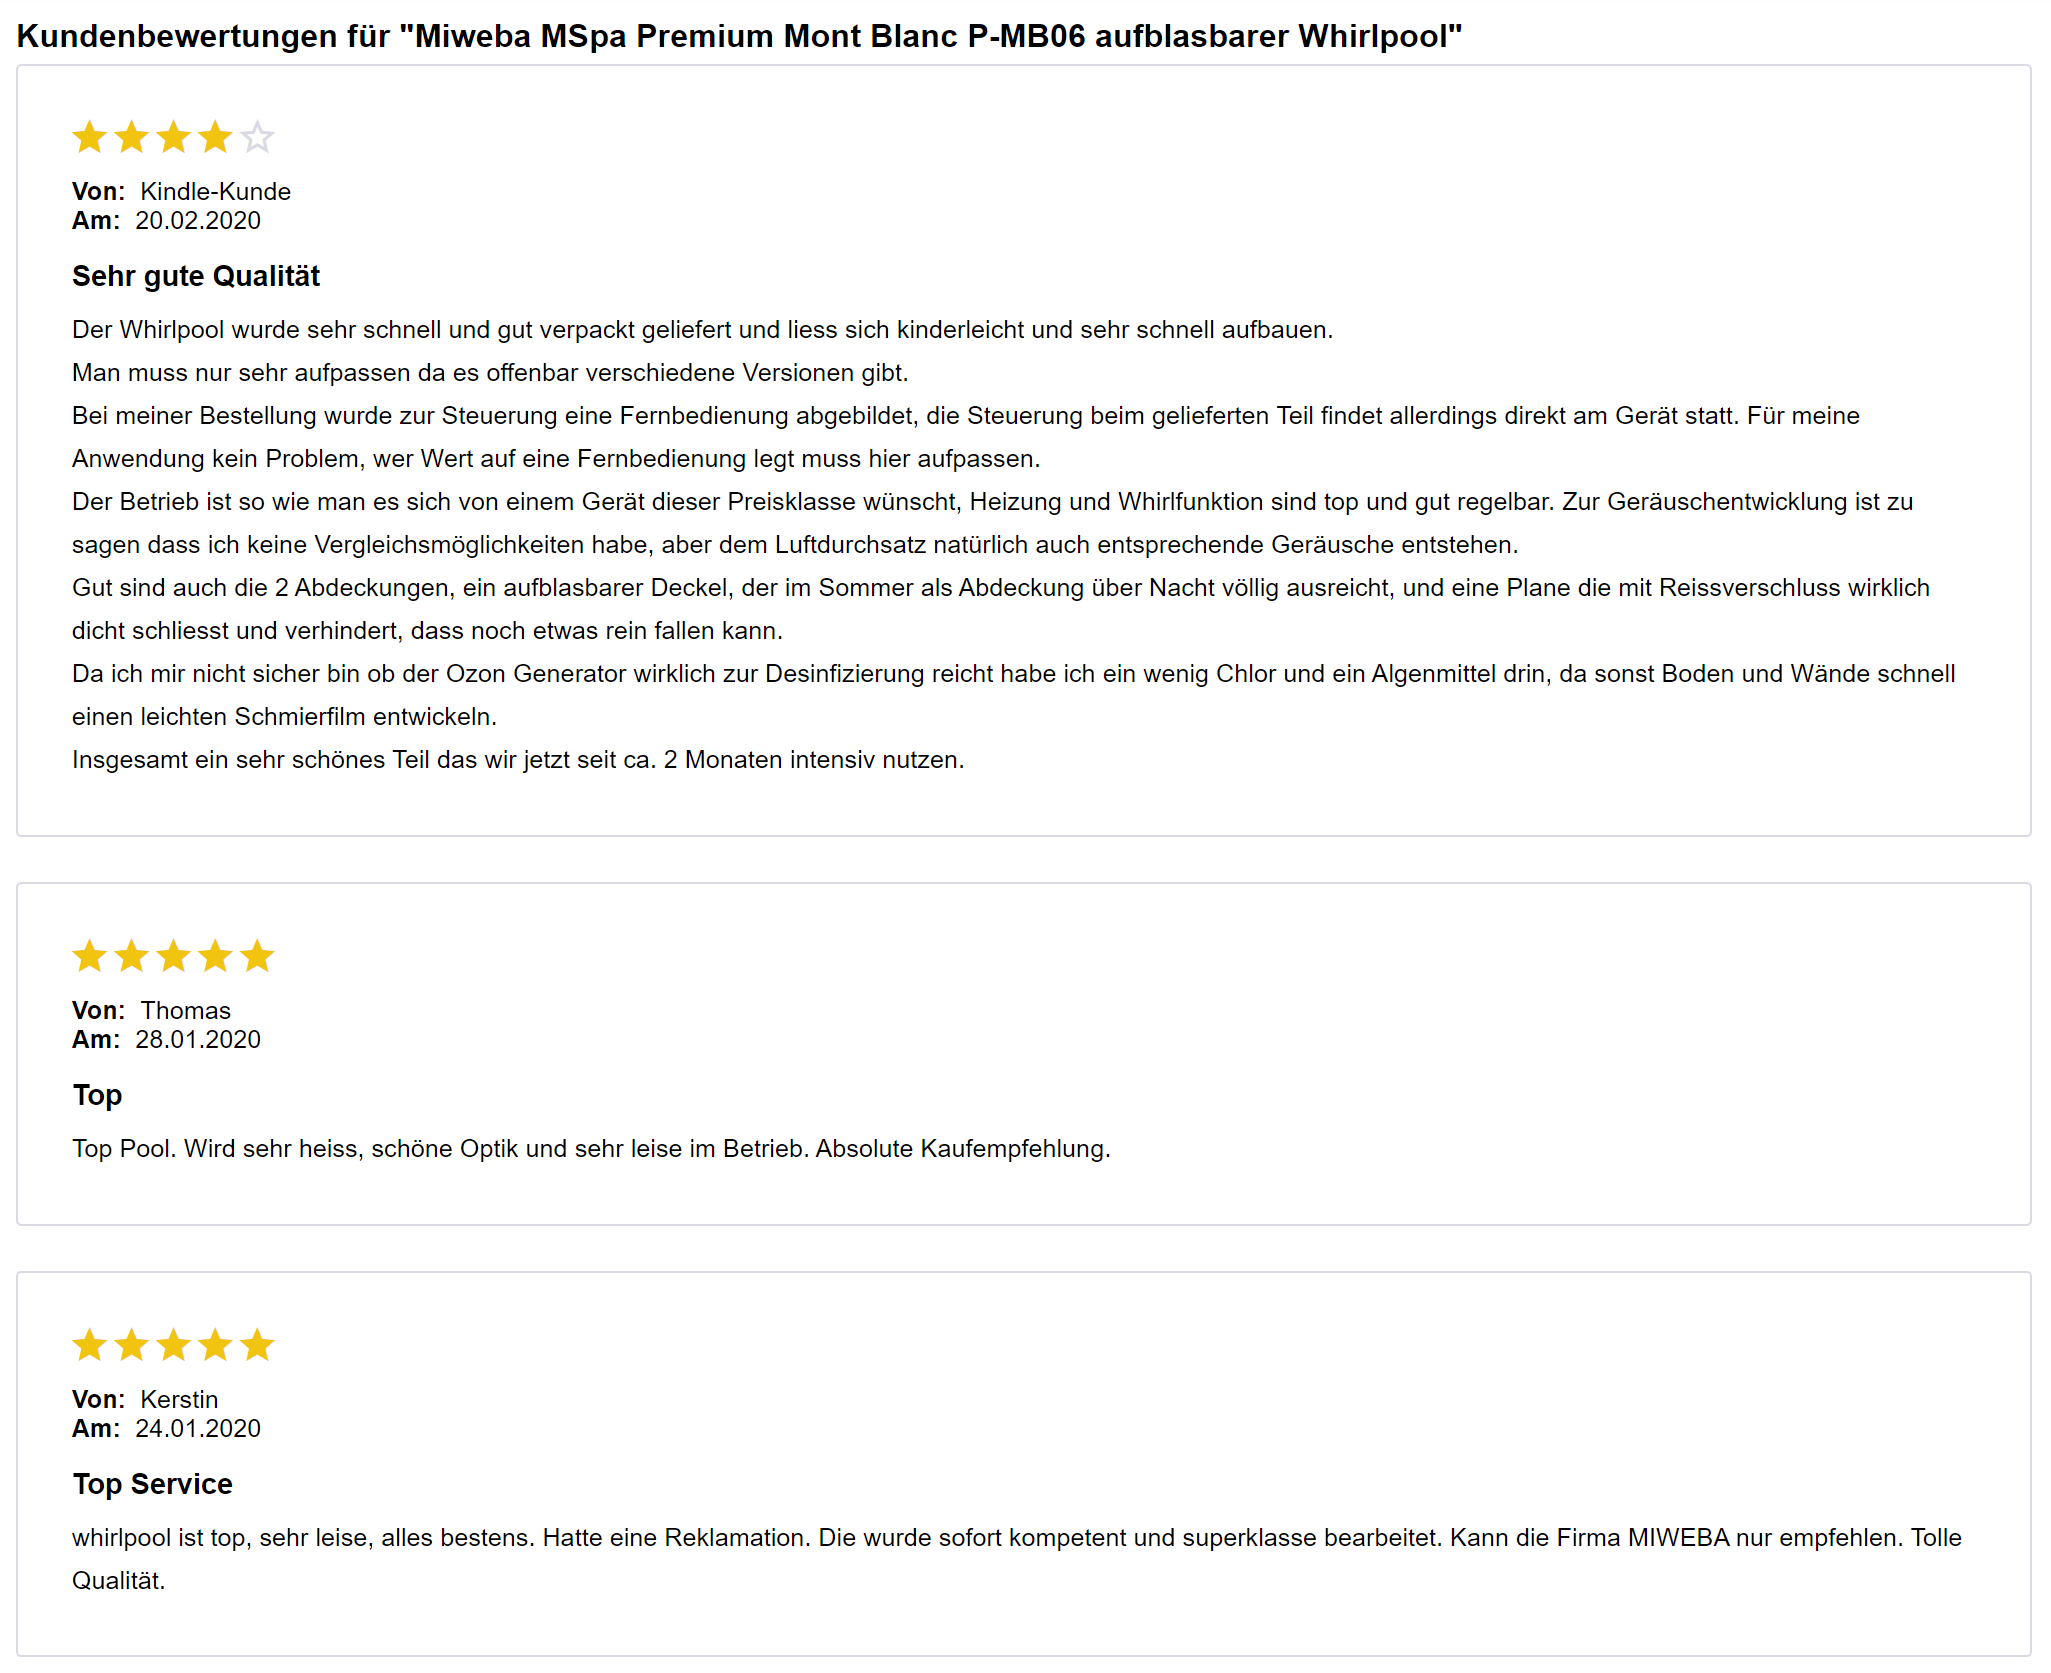 Kundenbewertungen zum Miweba MSpa Mont Blanc P-MB06 (Test & Preisvergleich) (aufblasbaren Whirlpool)